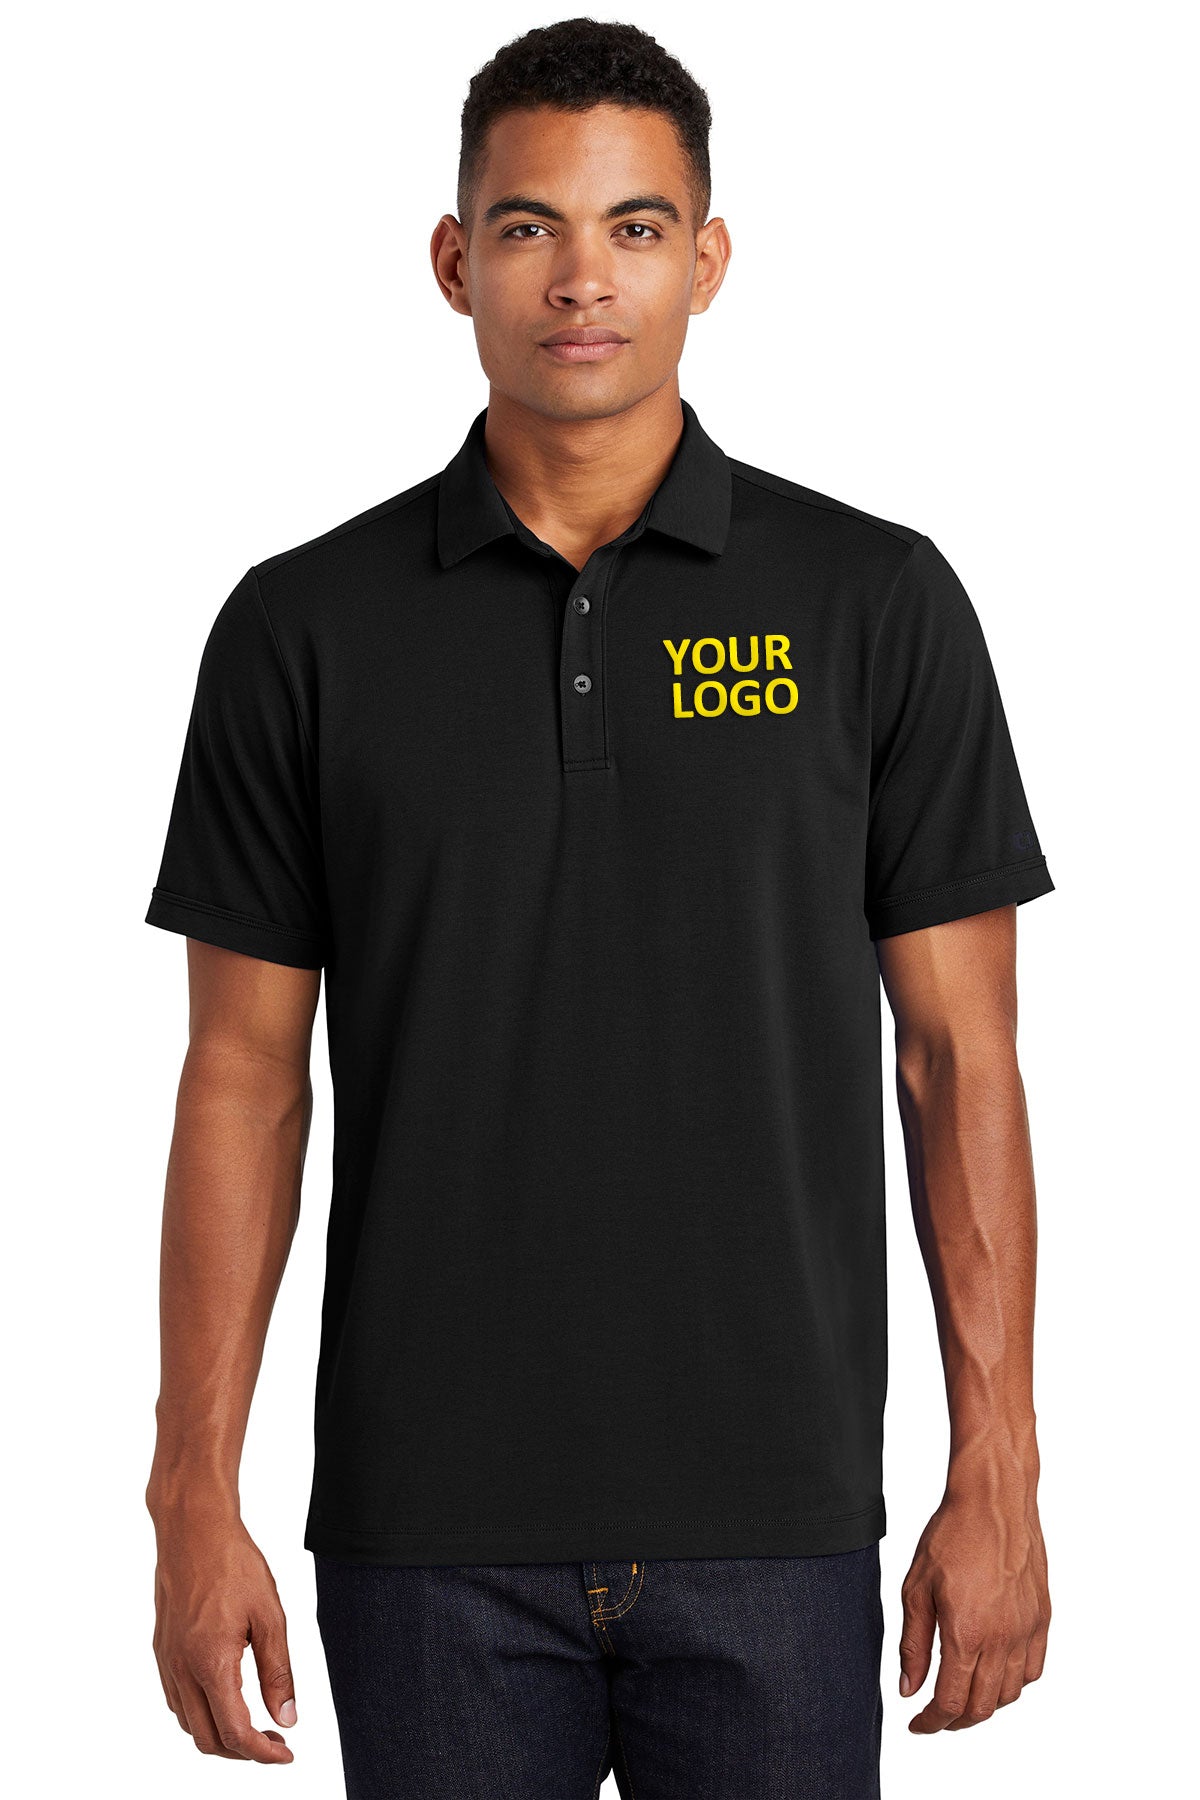 OGIO Blacktop OG138 embroidered polo shirts custom